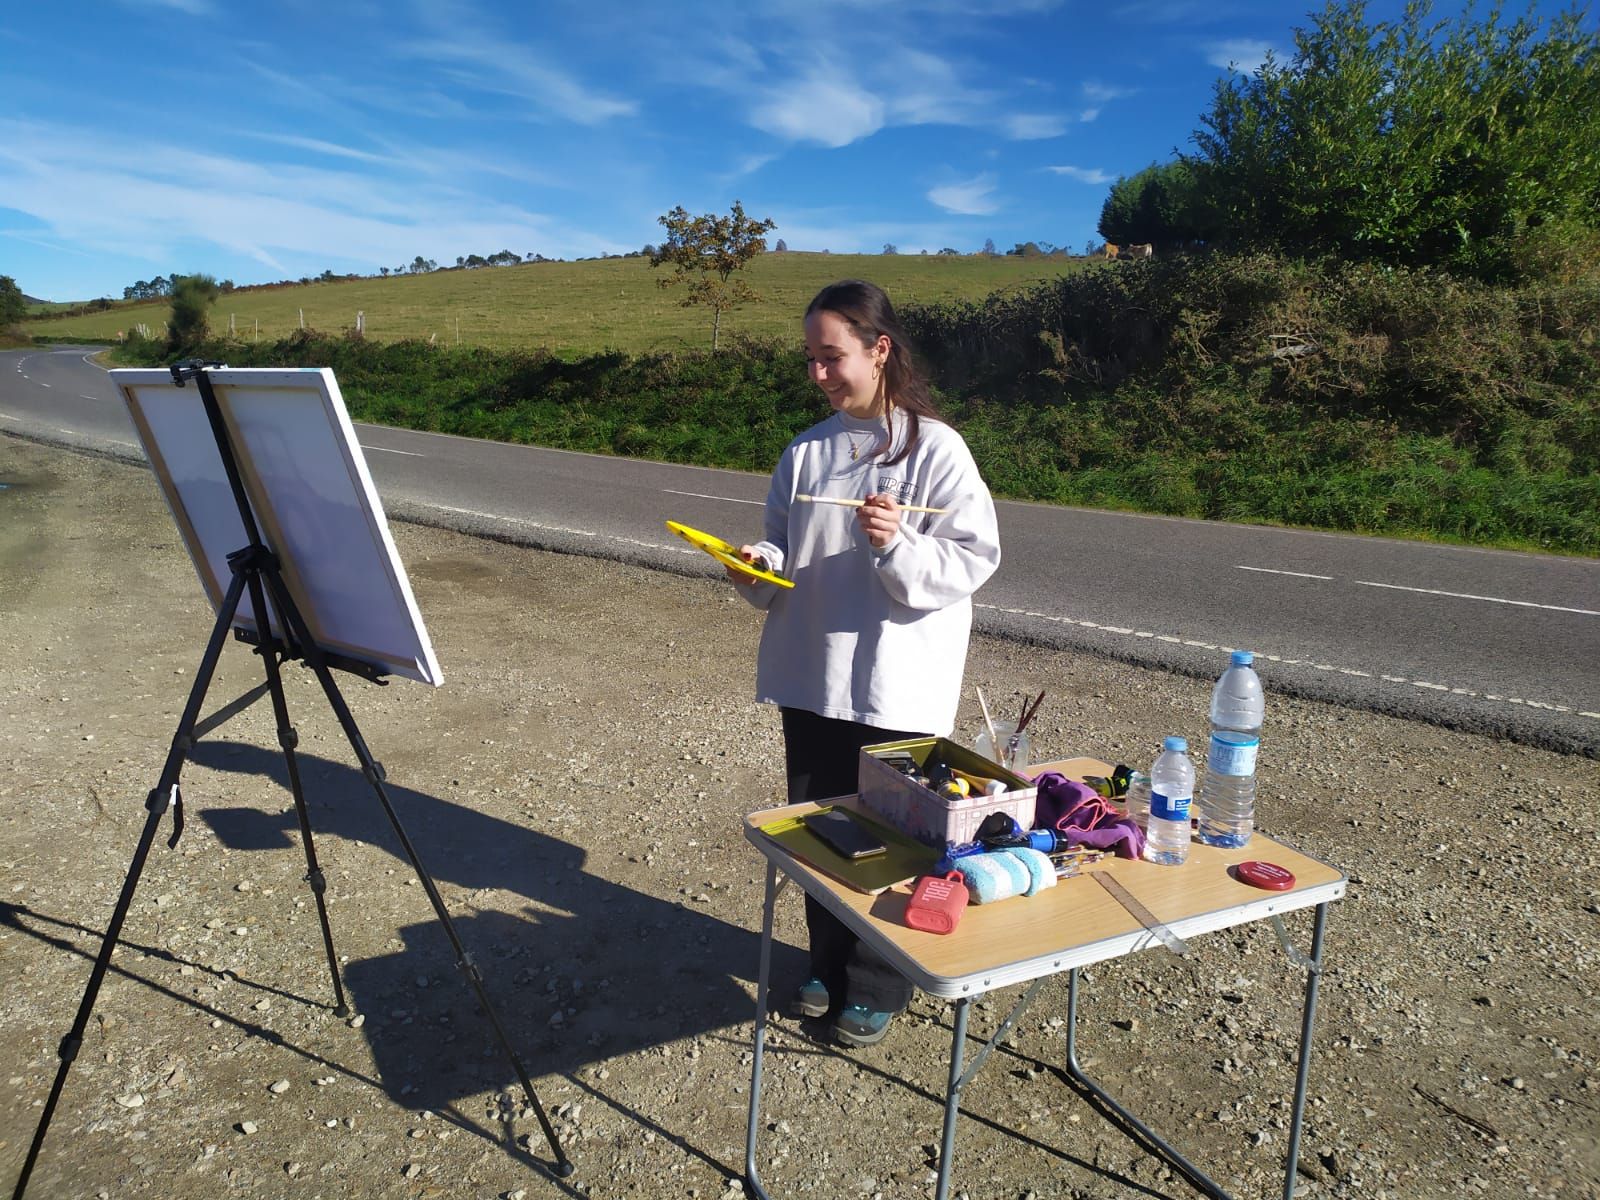 La ovetense Matilda Blanco, de 17 años, pintando un tractor junto a la carretera.